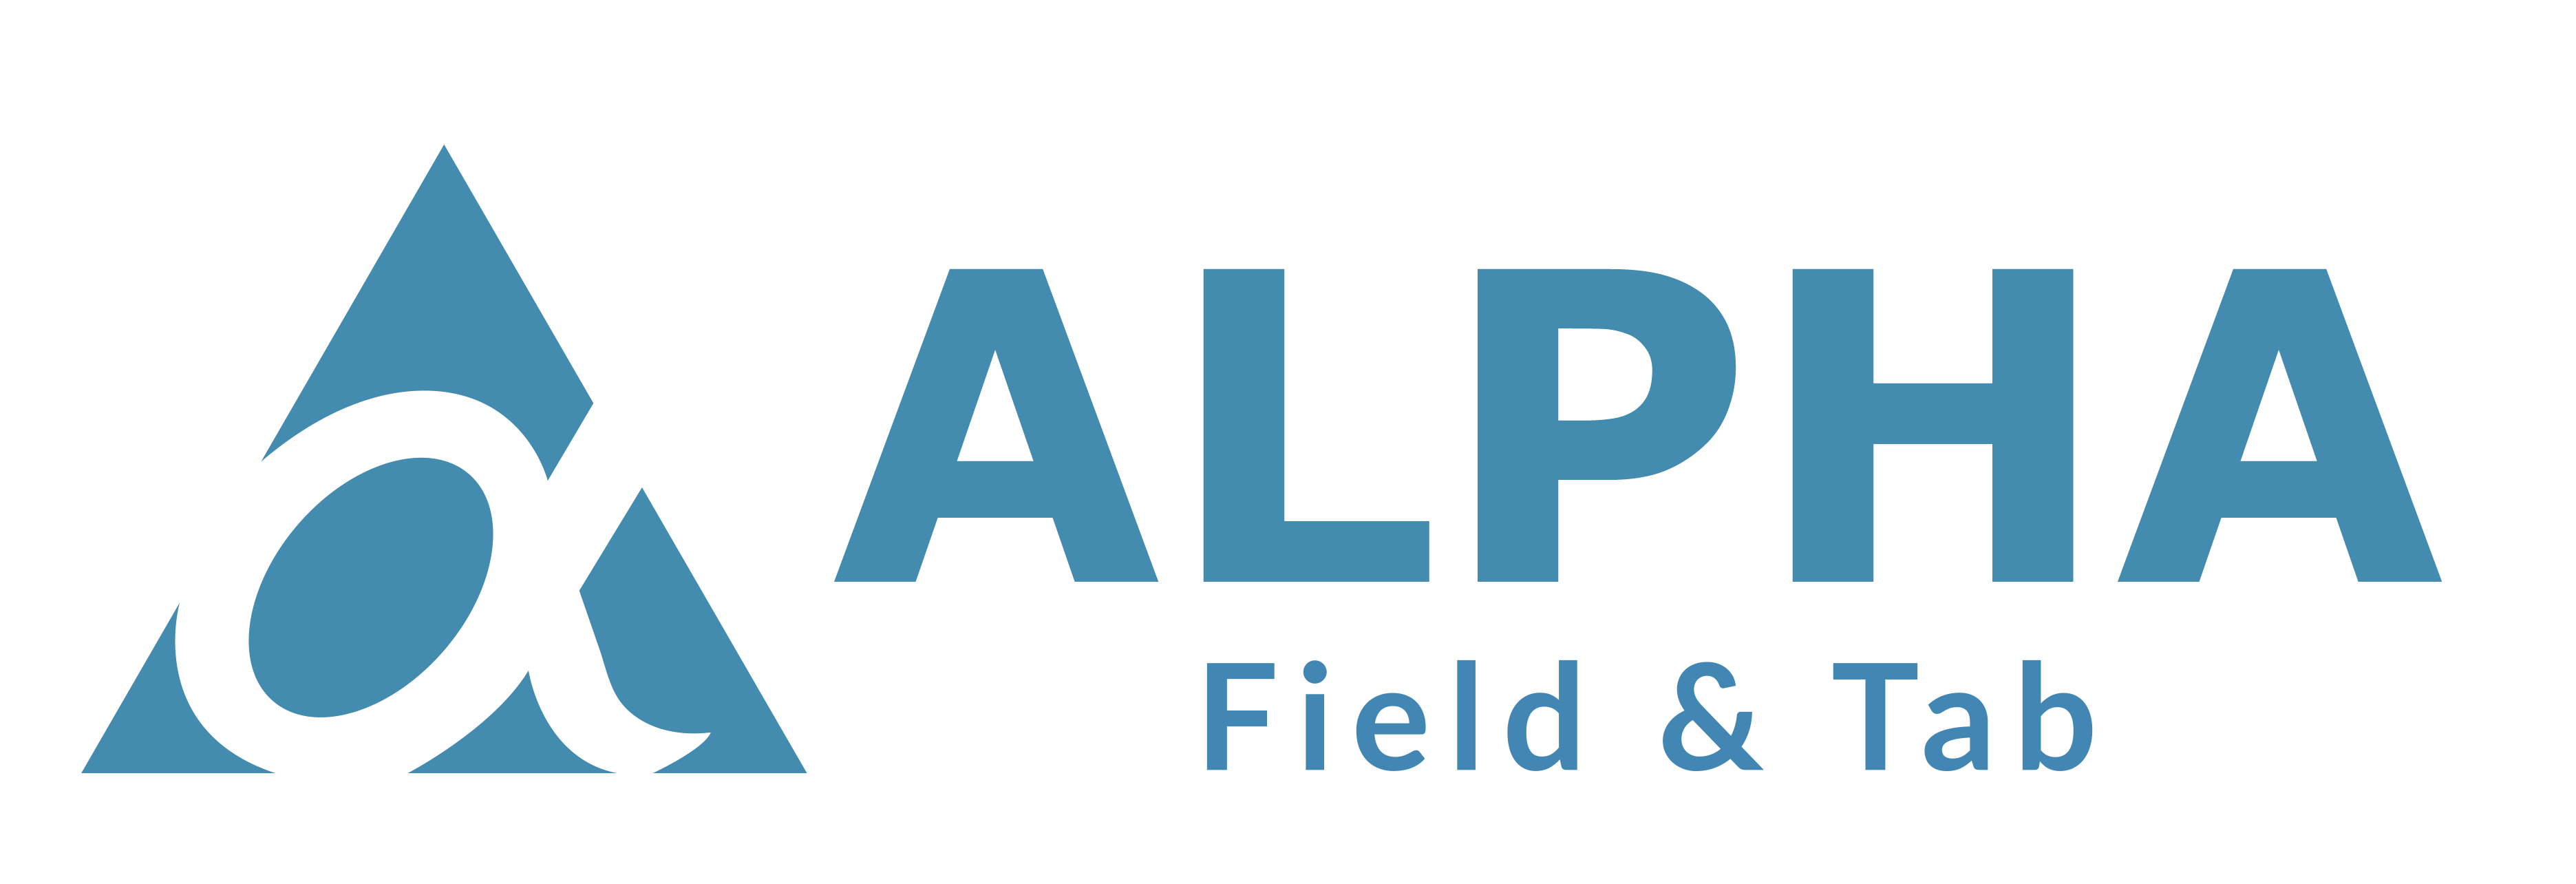 Alpha - field & tab